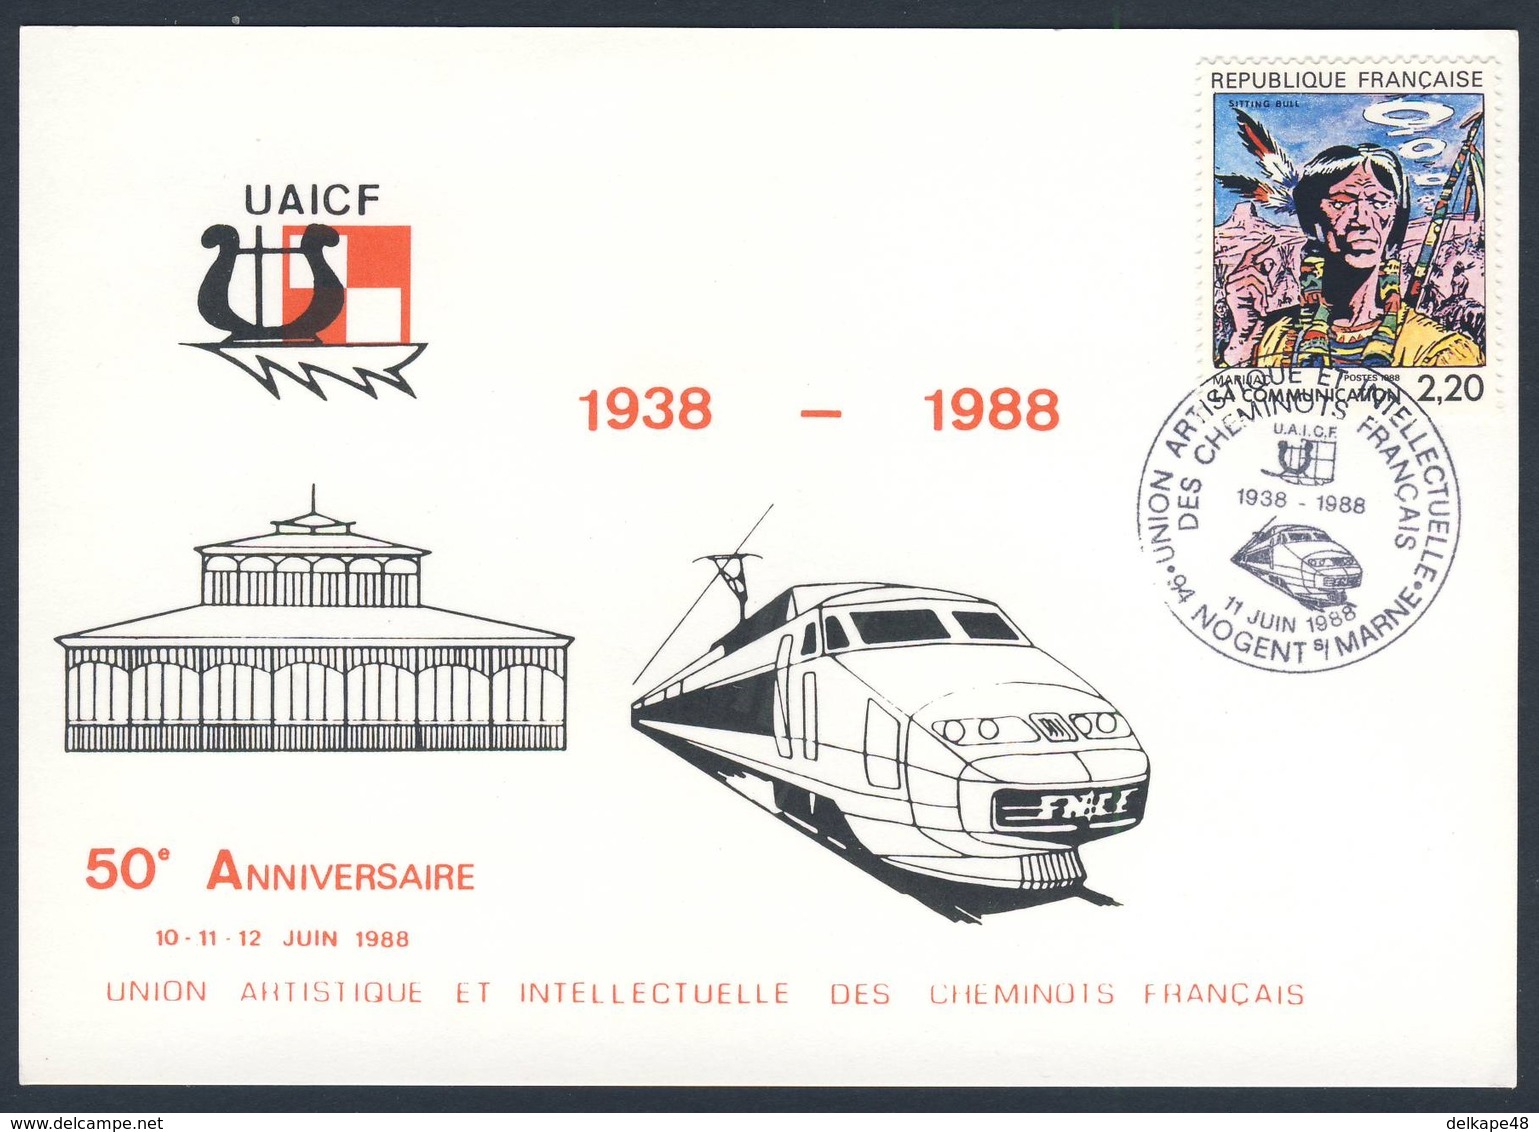 France Rep. Française 1988 Postcard Postkarte Carte Postale - 50e Ann. UAICF 1938-1988 - Union Artistique Intellectuelle - Trenes